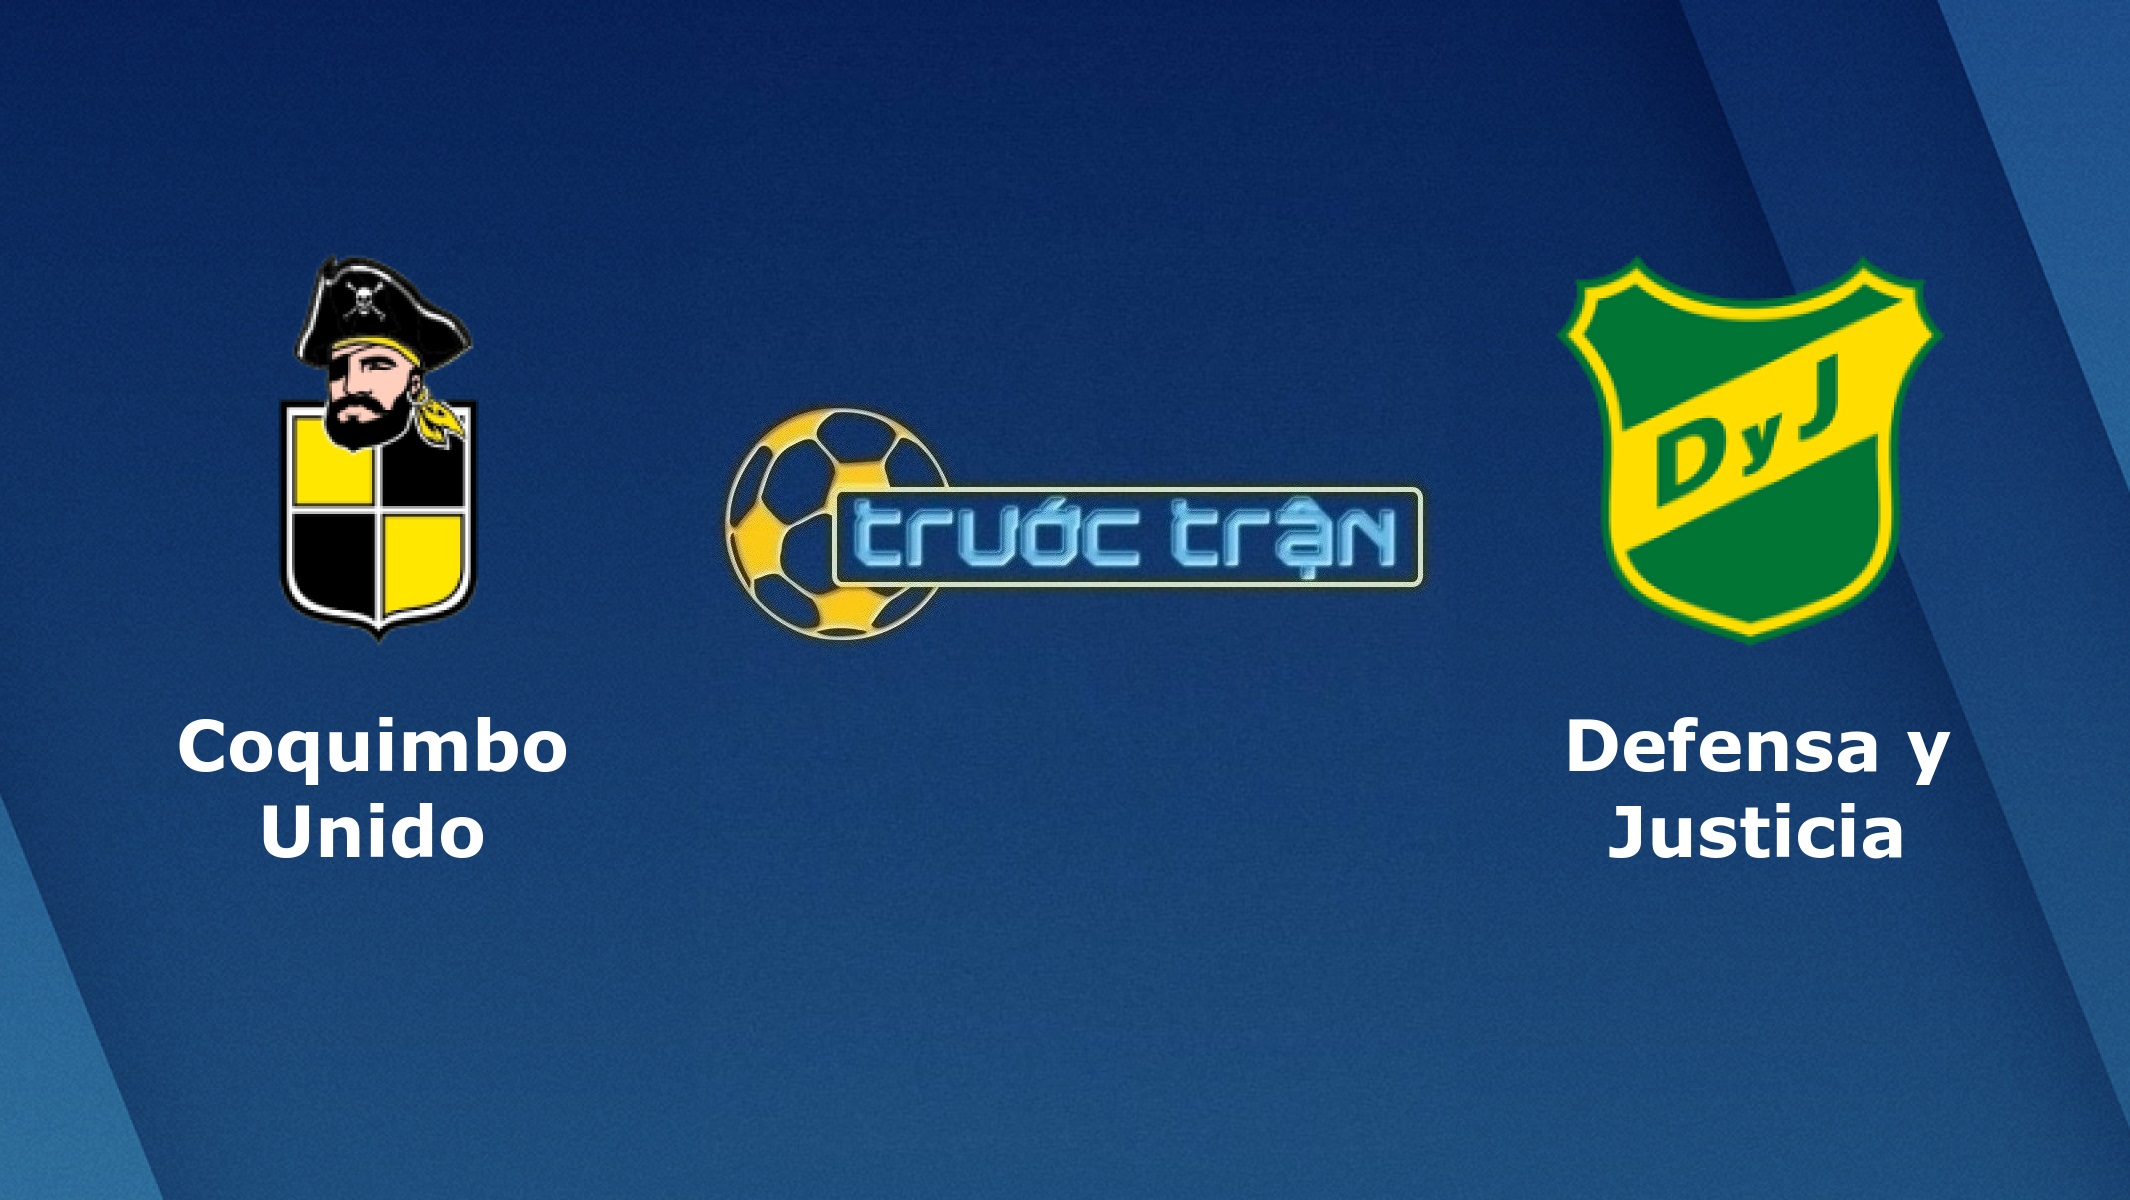 Coquimbo Unido vs Defensa y Justicia – Tip kèo bóng đá hôm nay – 07h30 08/01/2021